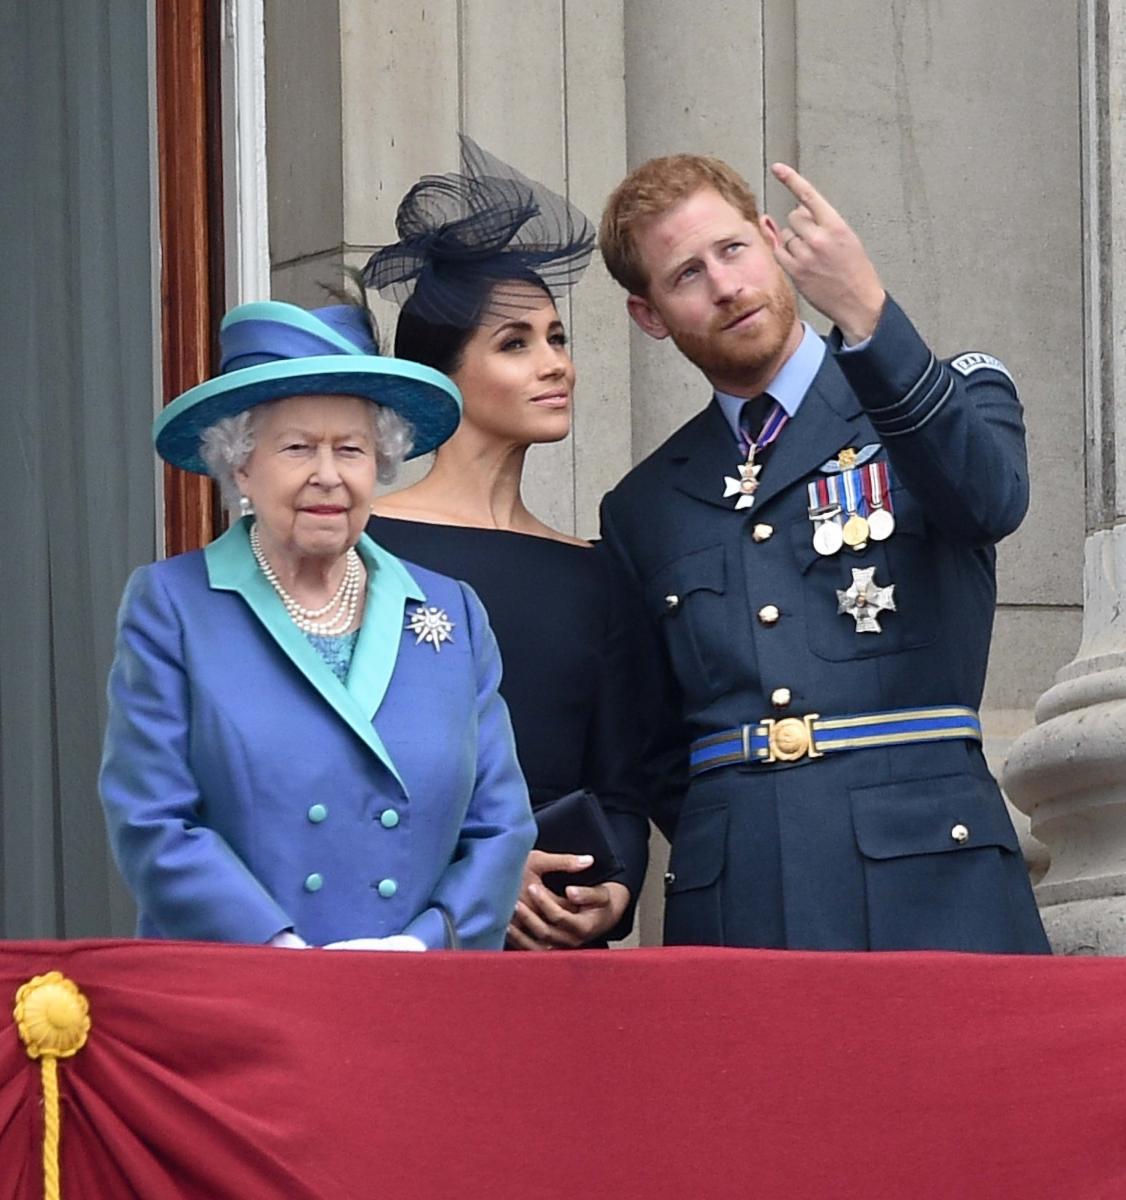 Rainha Elizabeth II, Meghan Markle e príncipe Harry celebrando o 100º aniversário da Royal Air Force